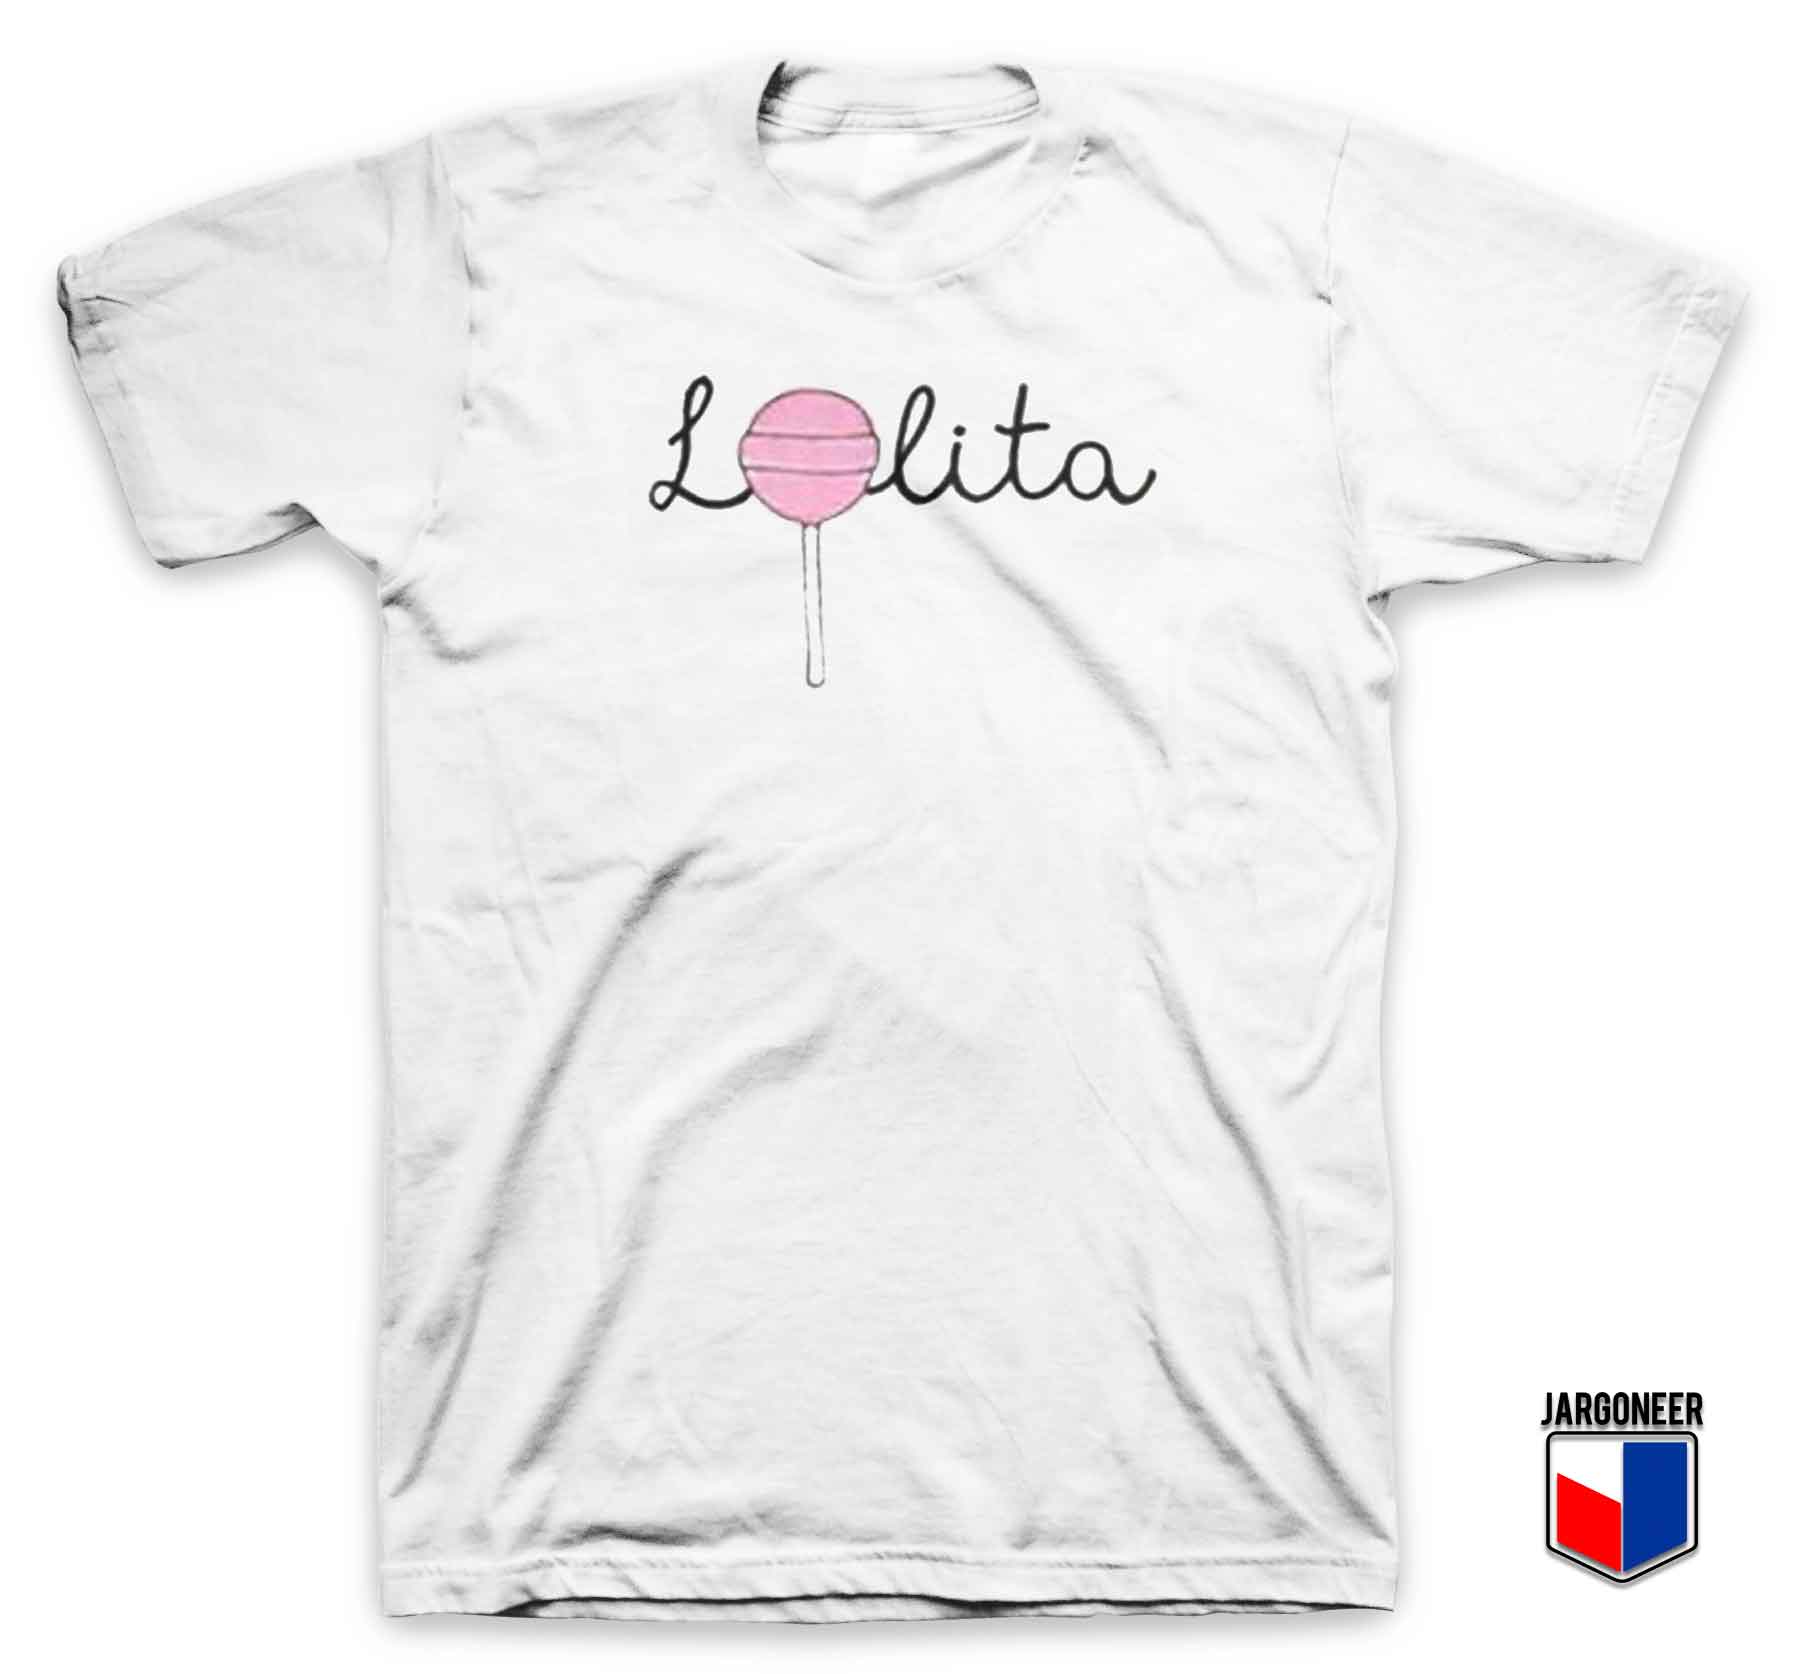 Lolita Lollipop - Shop Unique Graphic Cool Shirt Designs